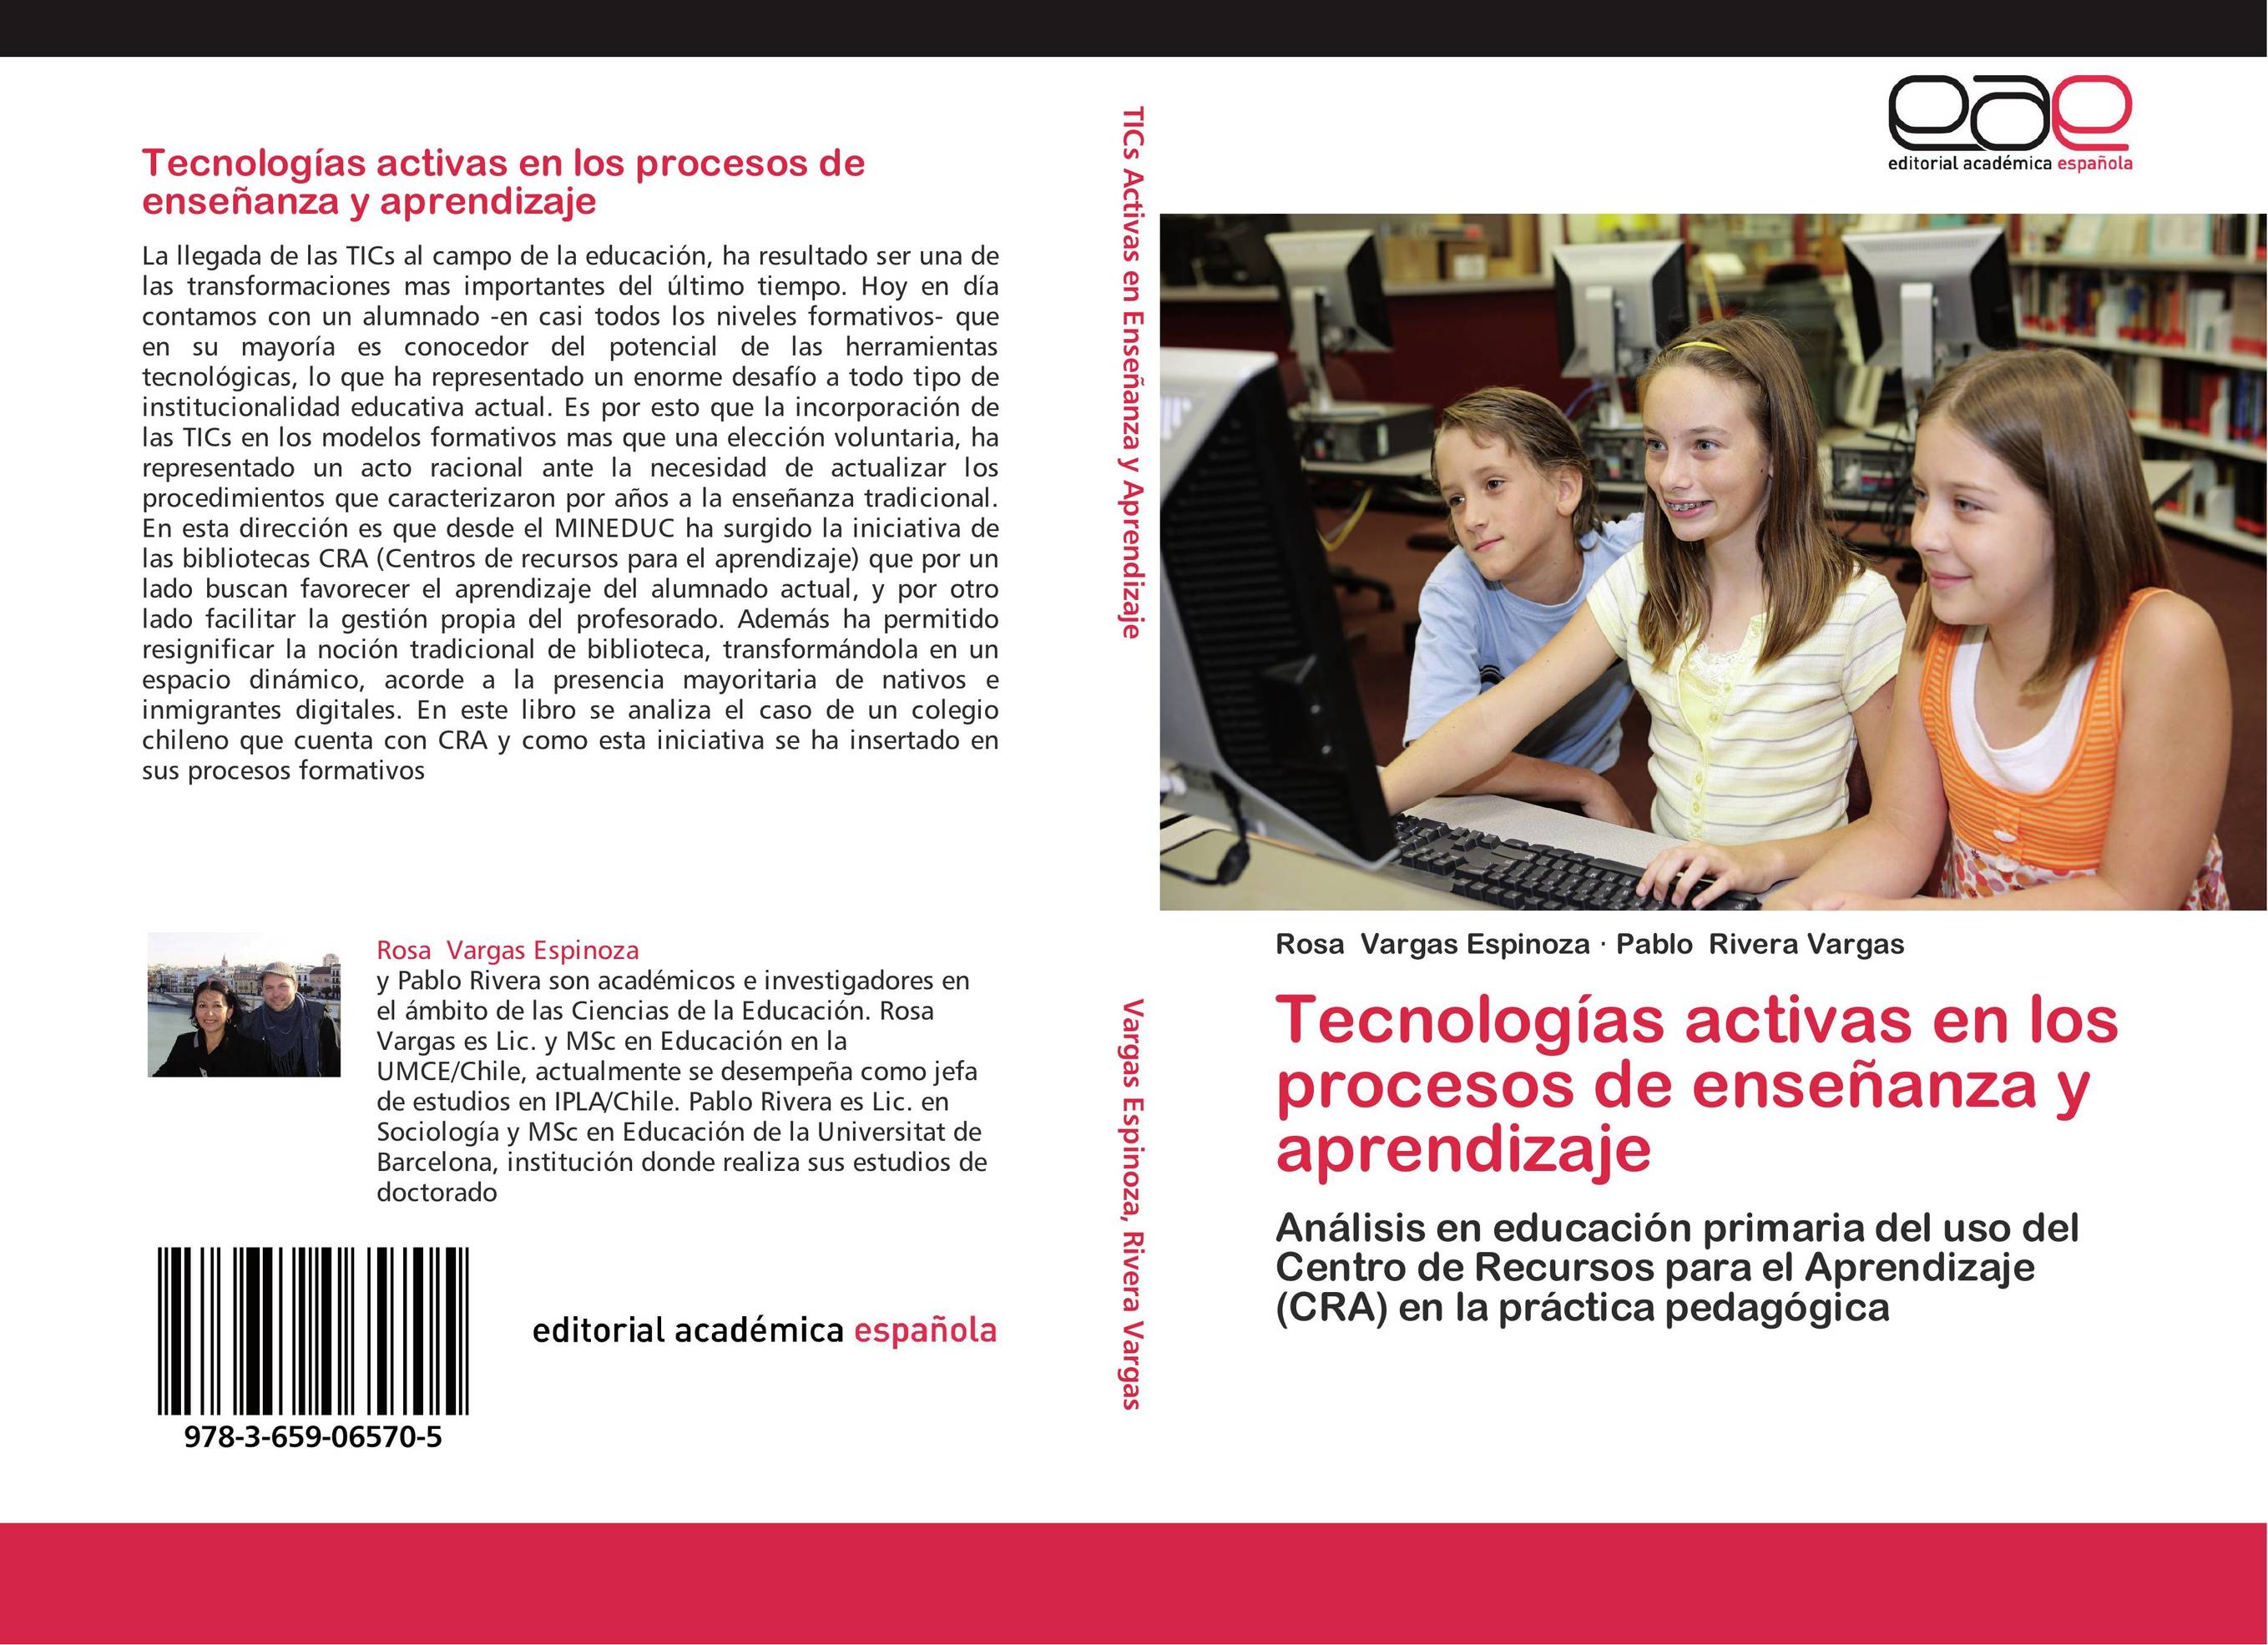 Tecnologías activas en los procesos de enseñanza y aprendizaje